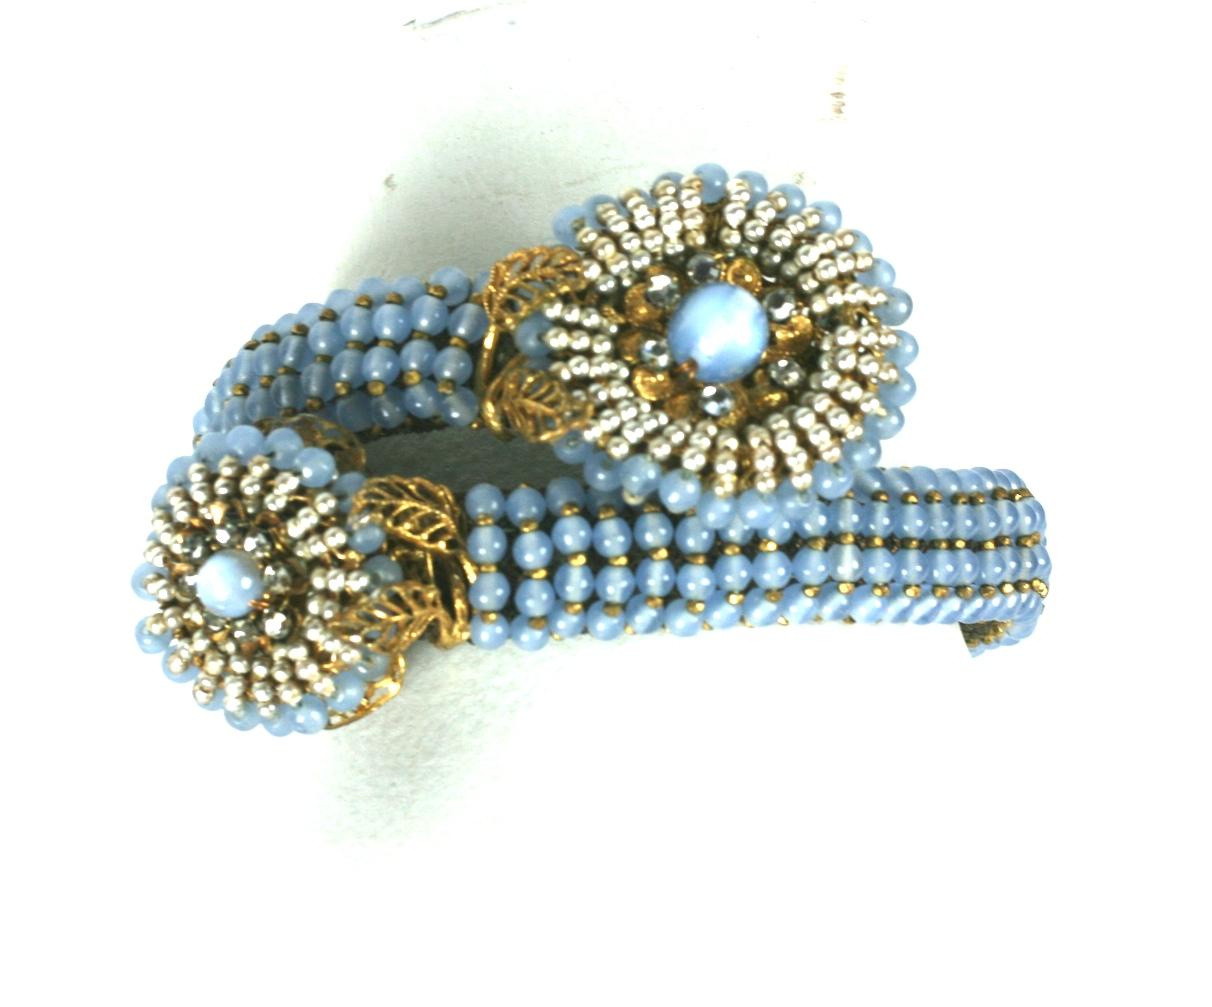 Bracelet élaboré de Miriam Haskell. Le bracelet est composé de fausses perles rondes en Steele bleu, de petites entretoises en acier taillé à facettes dorées et de filigranes dorés caractéristiques de la Russie.  Le tout est cousu à la main sur une